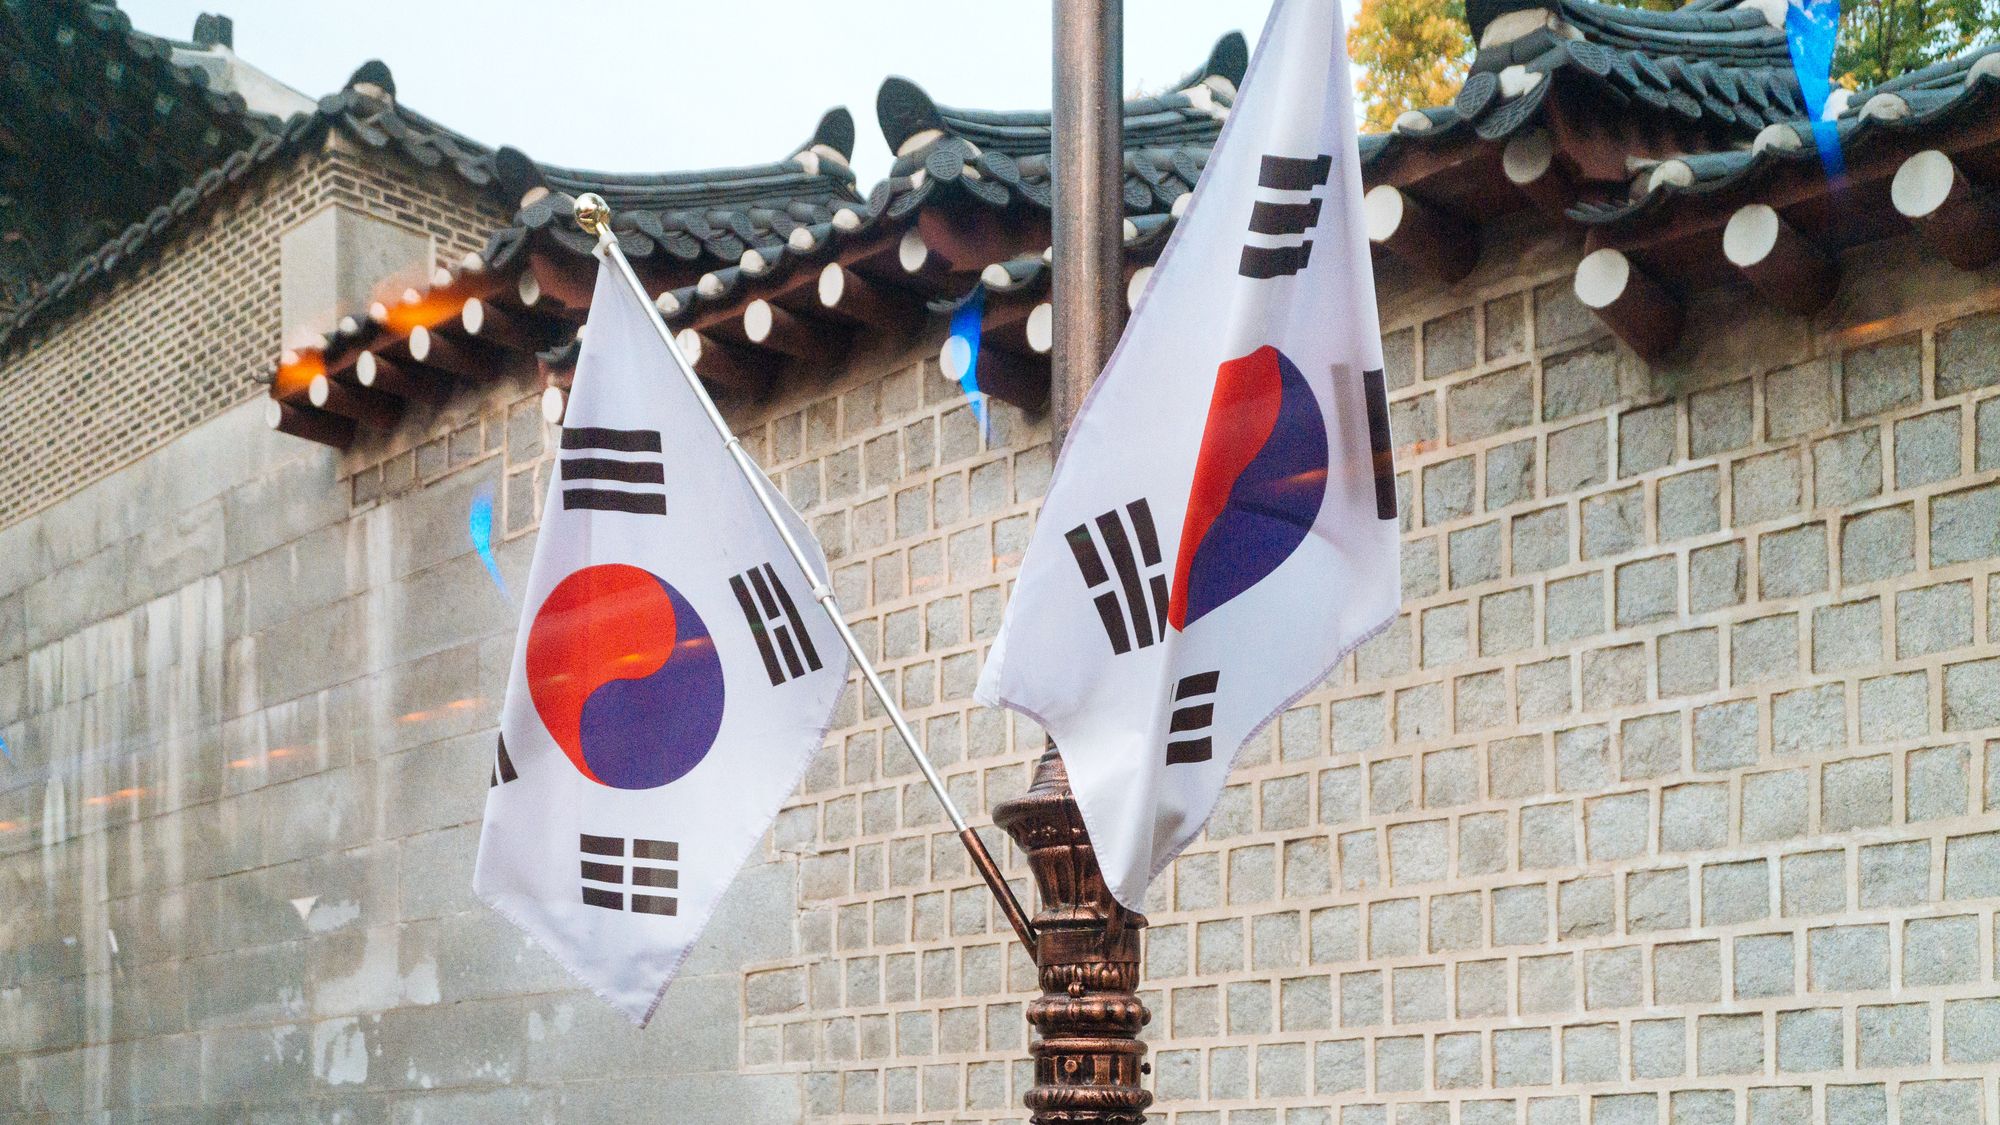 South Korean flags